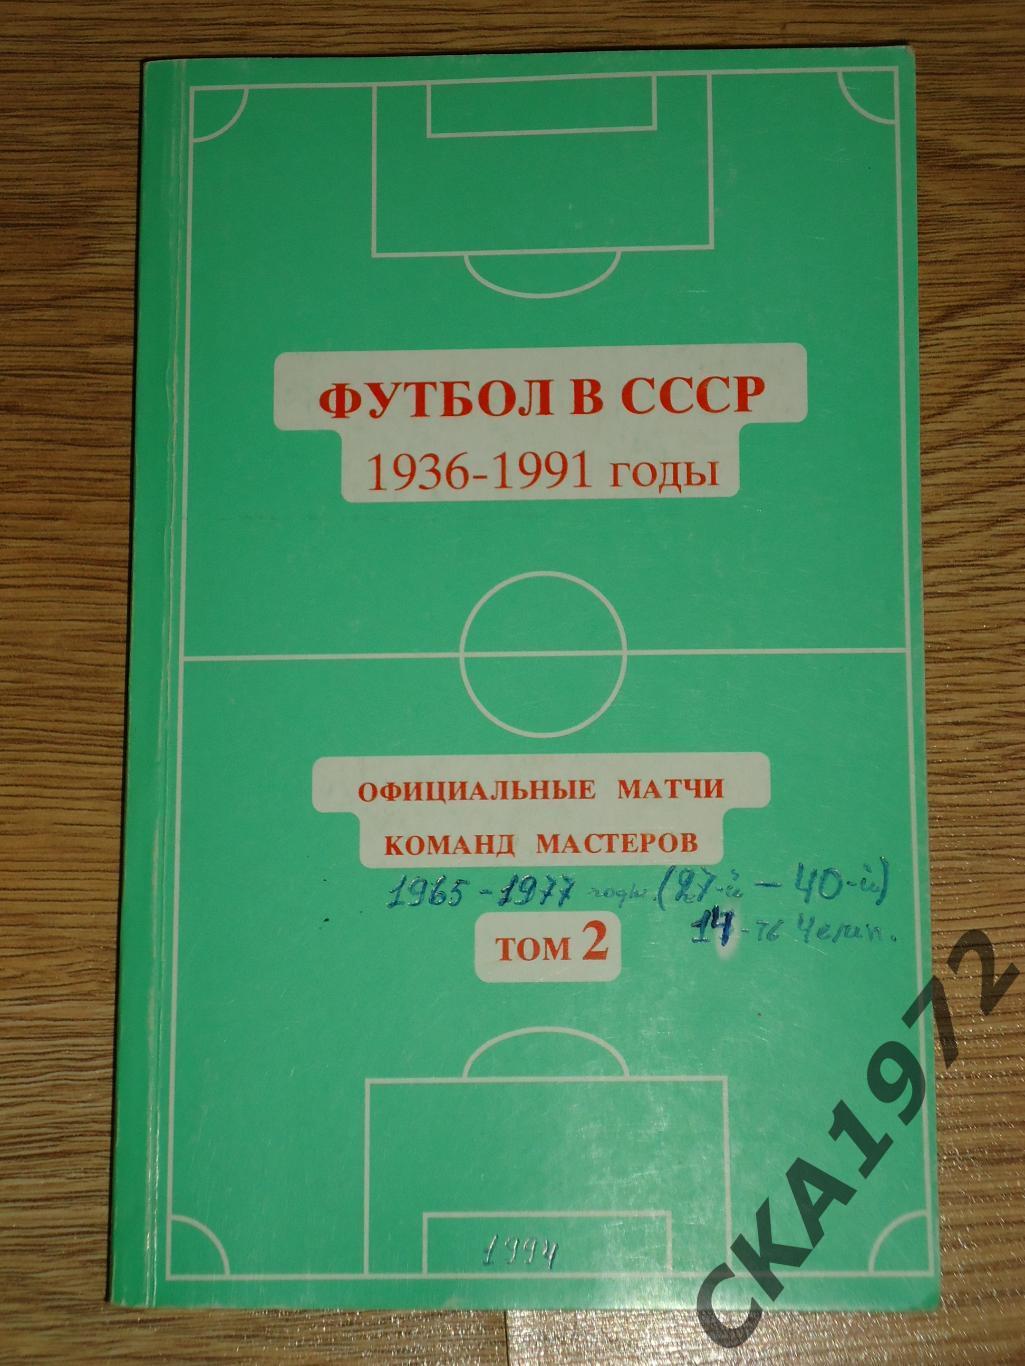 справочник Футбол в СССР 1965-1977 том 2 1994 +++